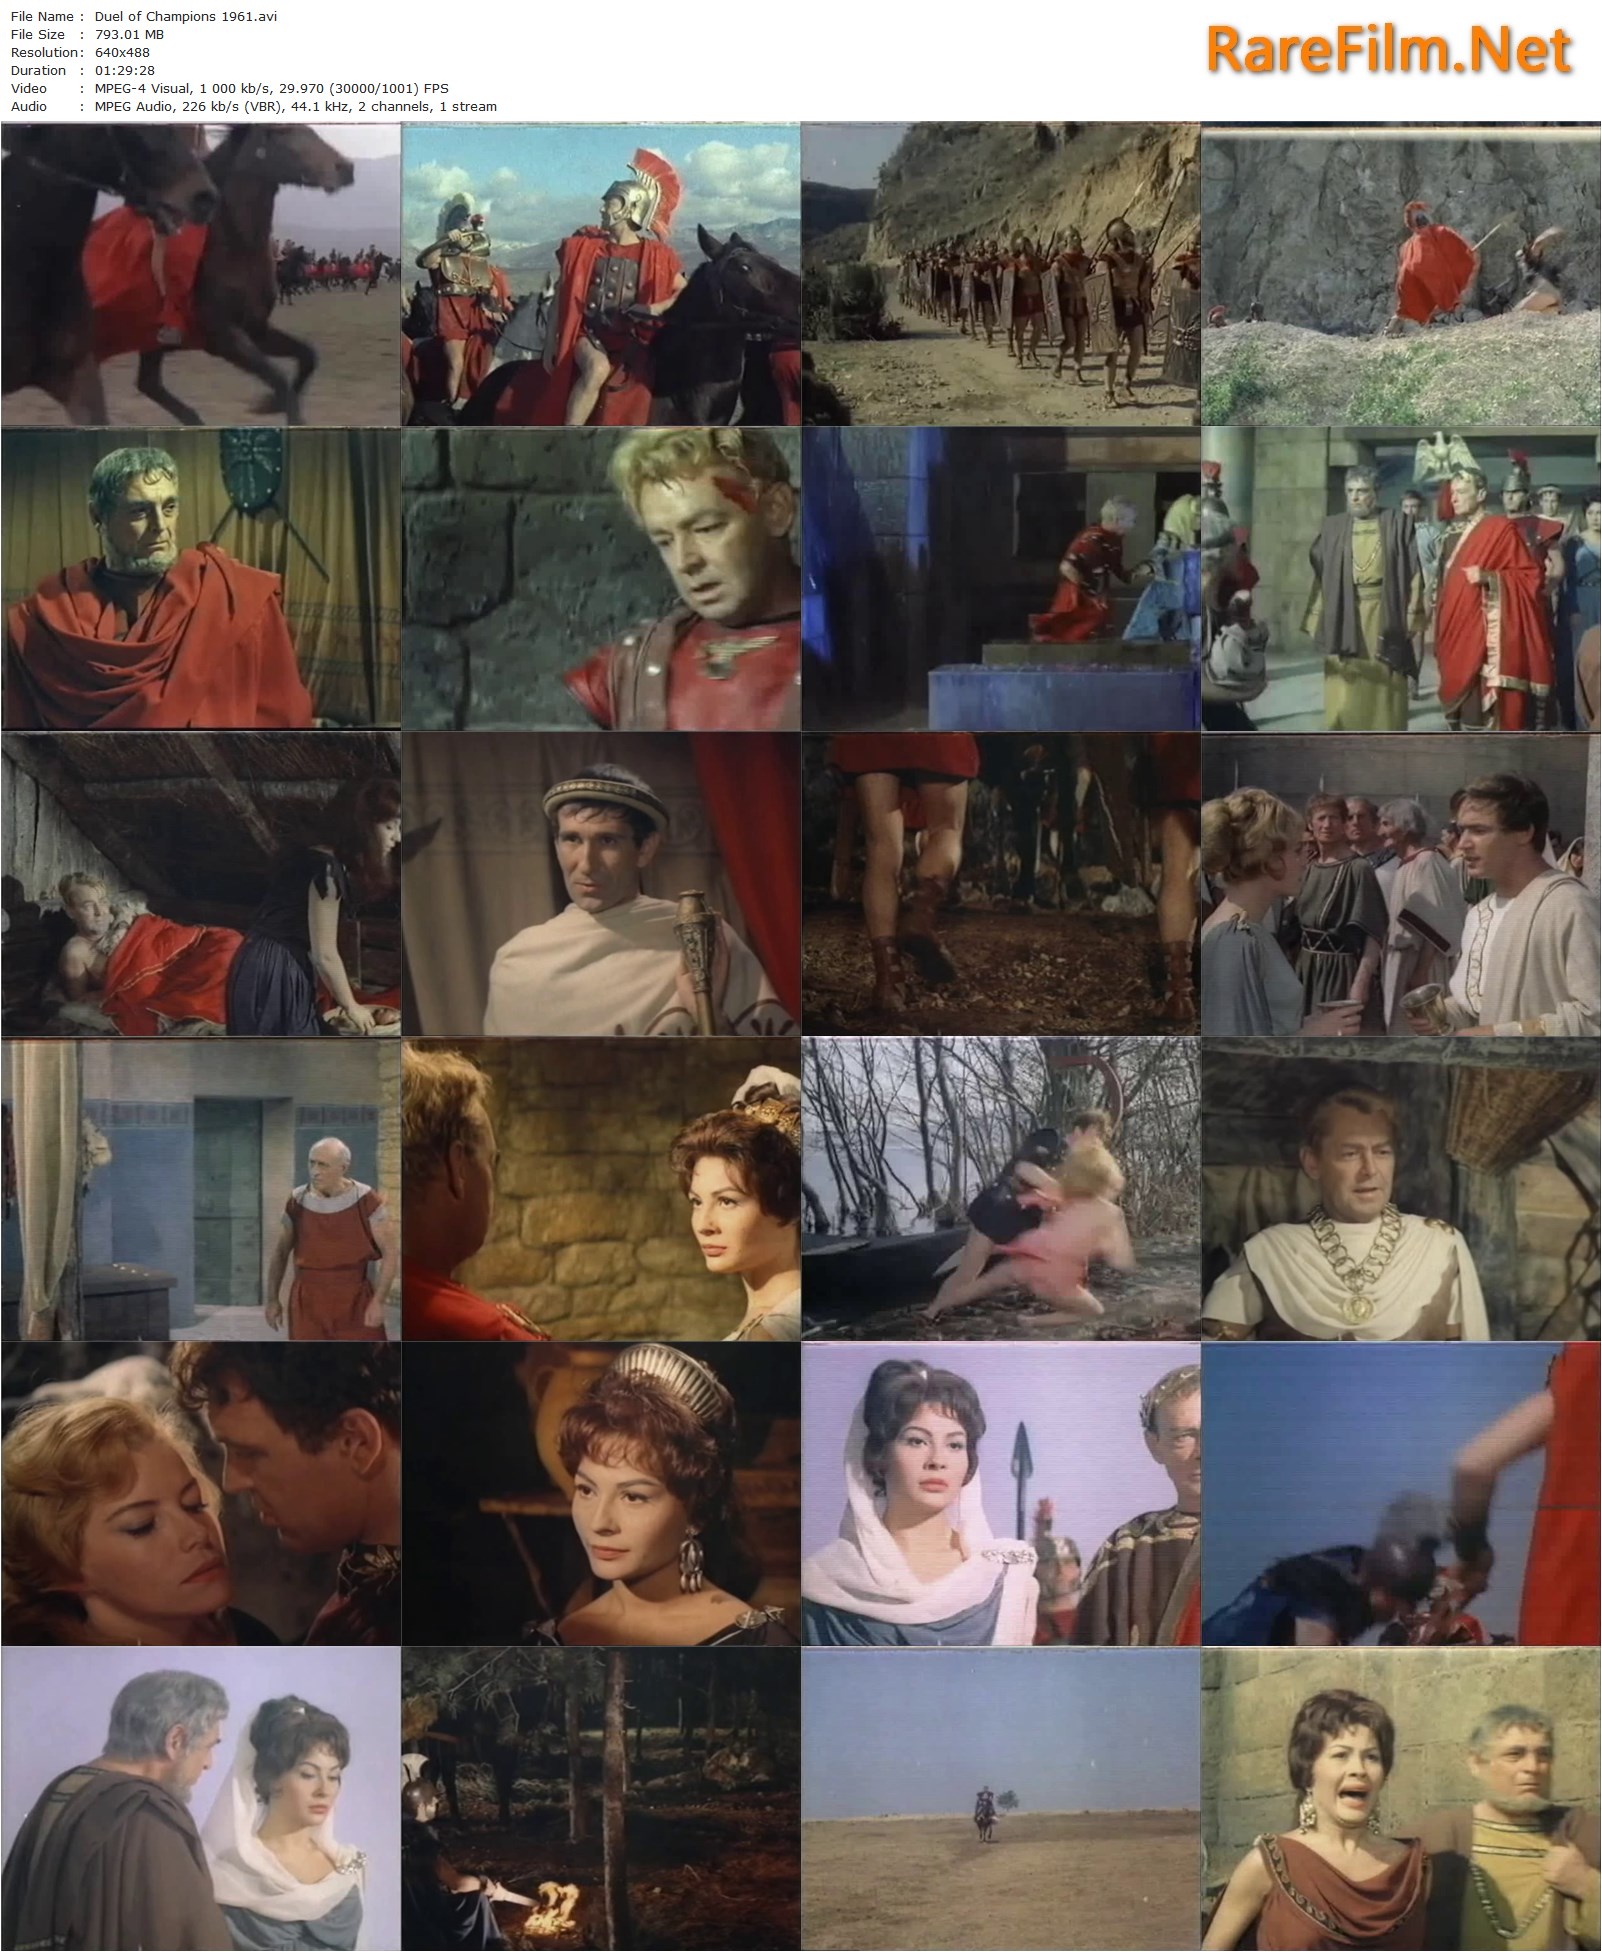 Duel of Champions AKA Orazi Curiazi (1961) Ferdinando Baldi, Terence Young, Ladd, Bettoia, Franco Fabrizi | RareFilm